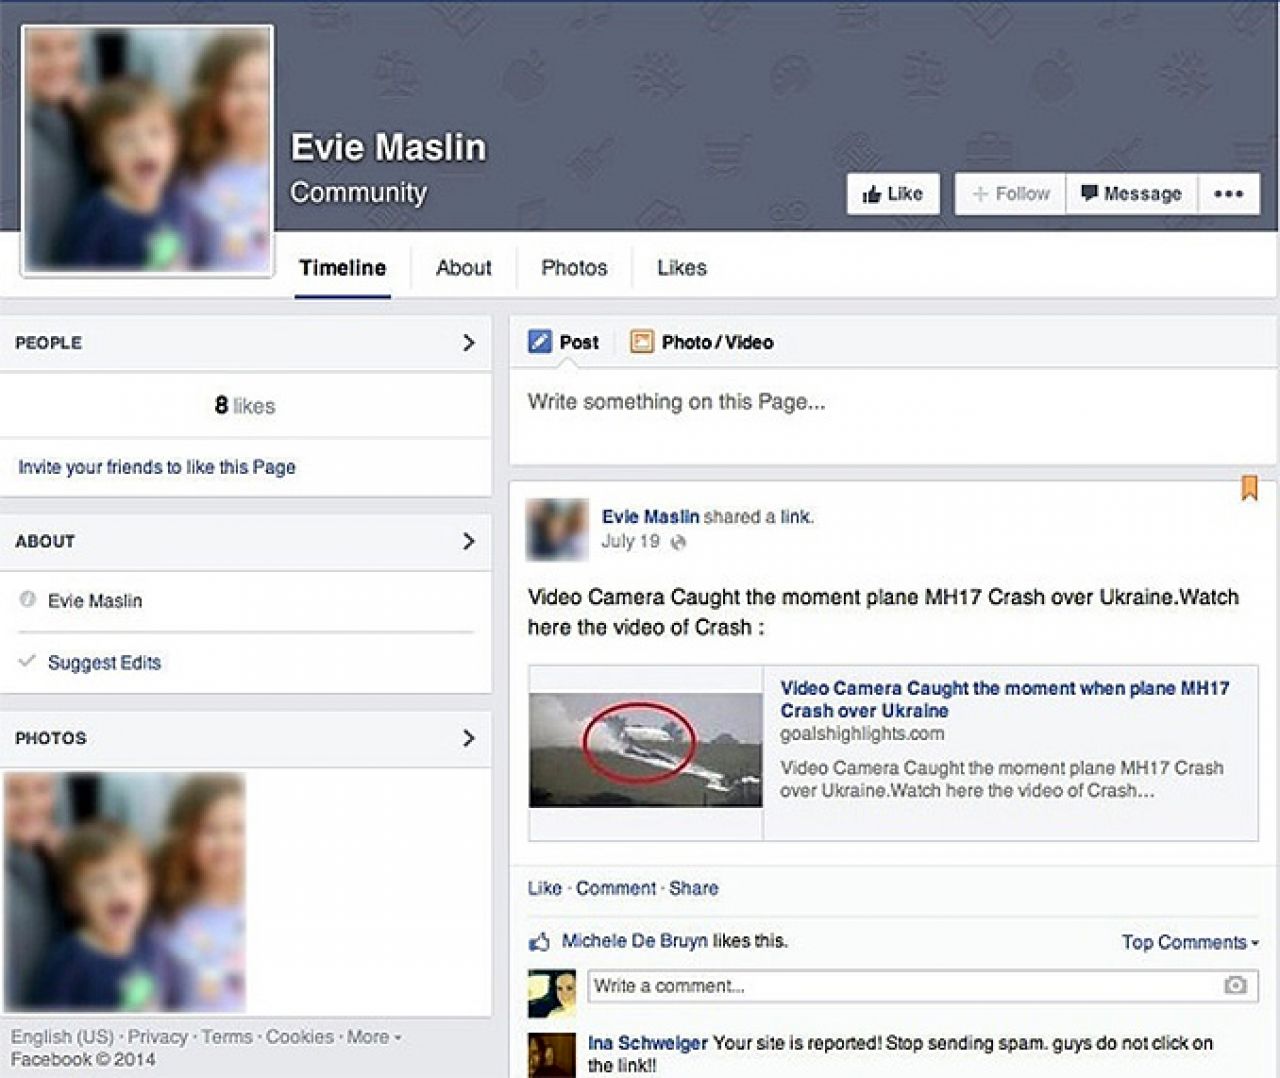 Prevaranti ne biraju sredstva: Na Facebooku se pojavili lažni profili poginulih putnika